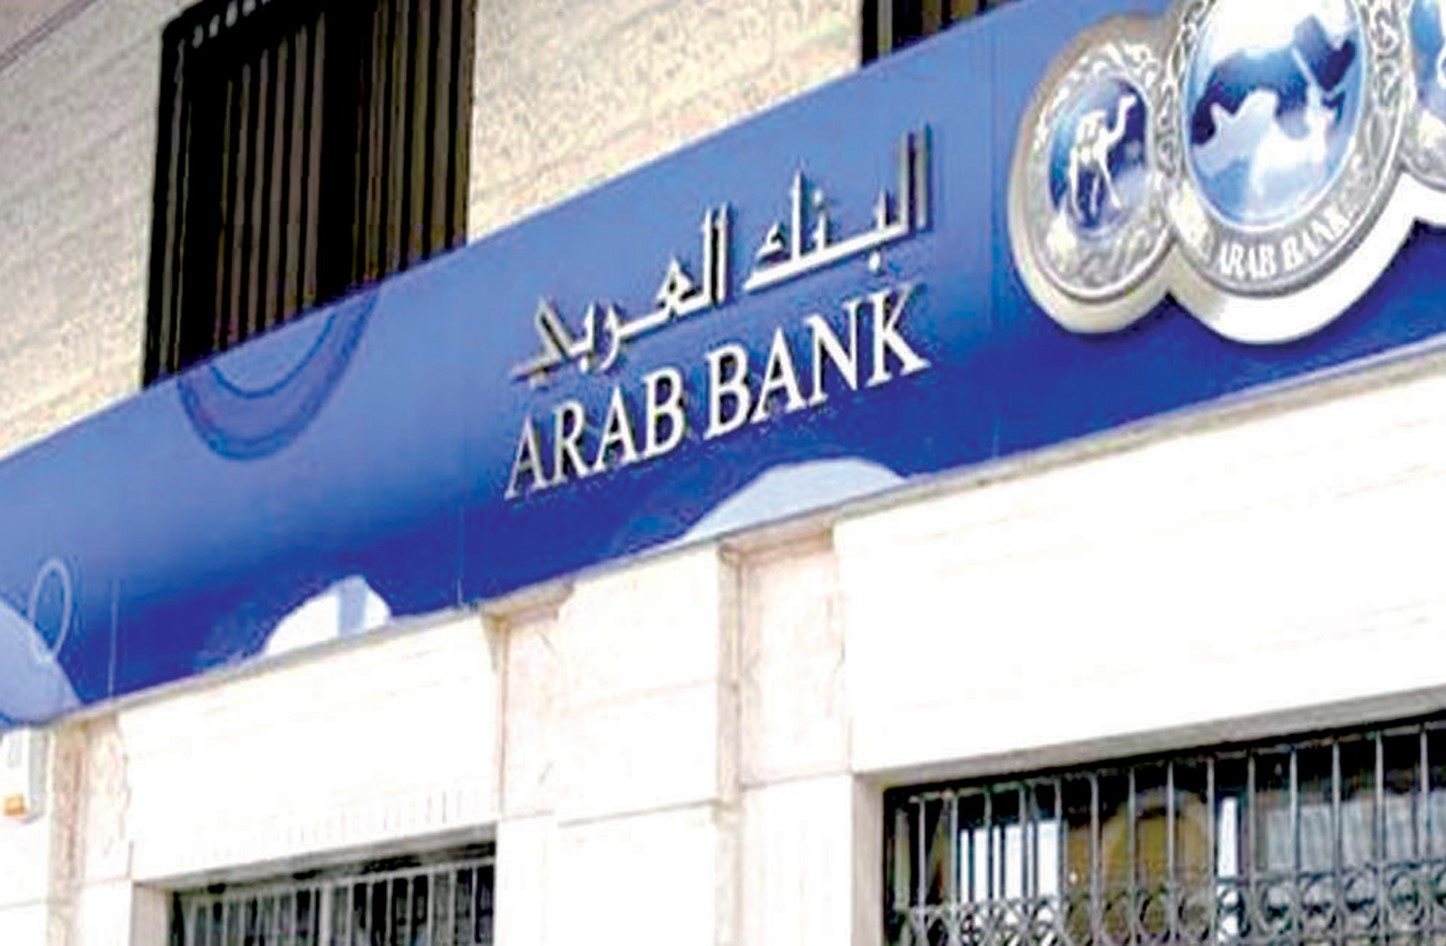 البنك العربي في البحرين يطلق خدمات تخص الأطباء